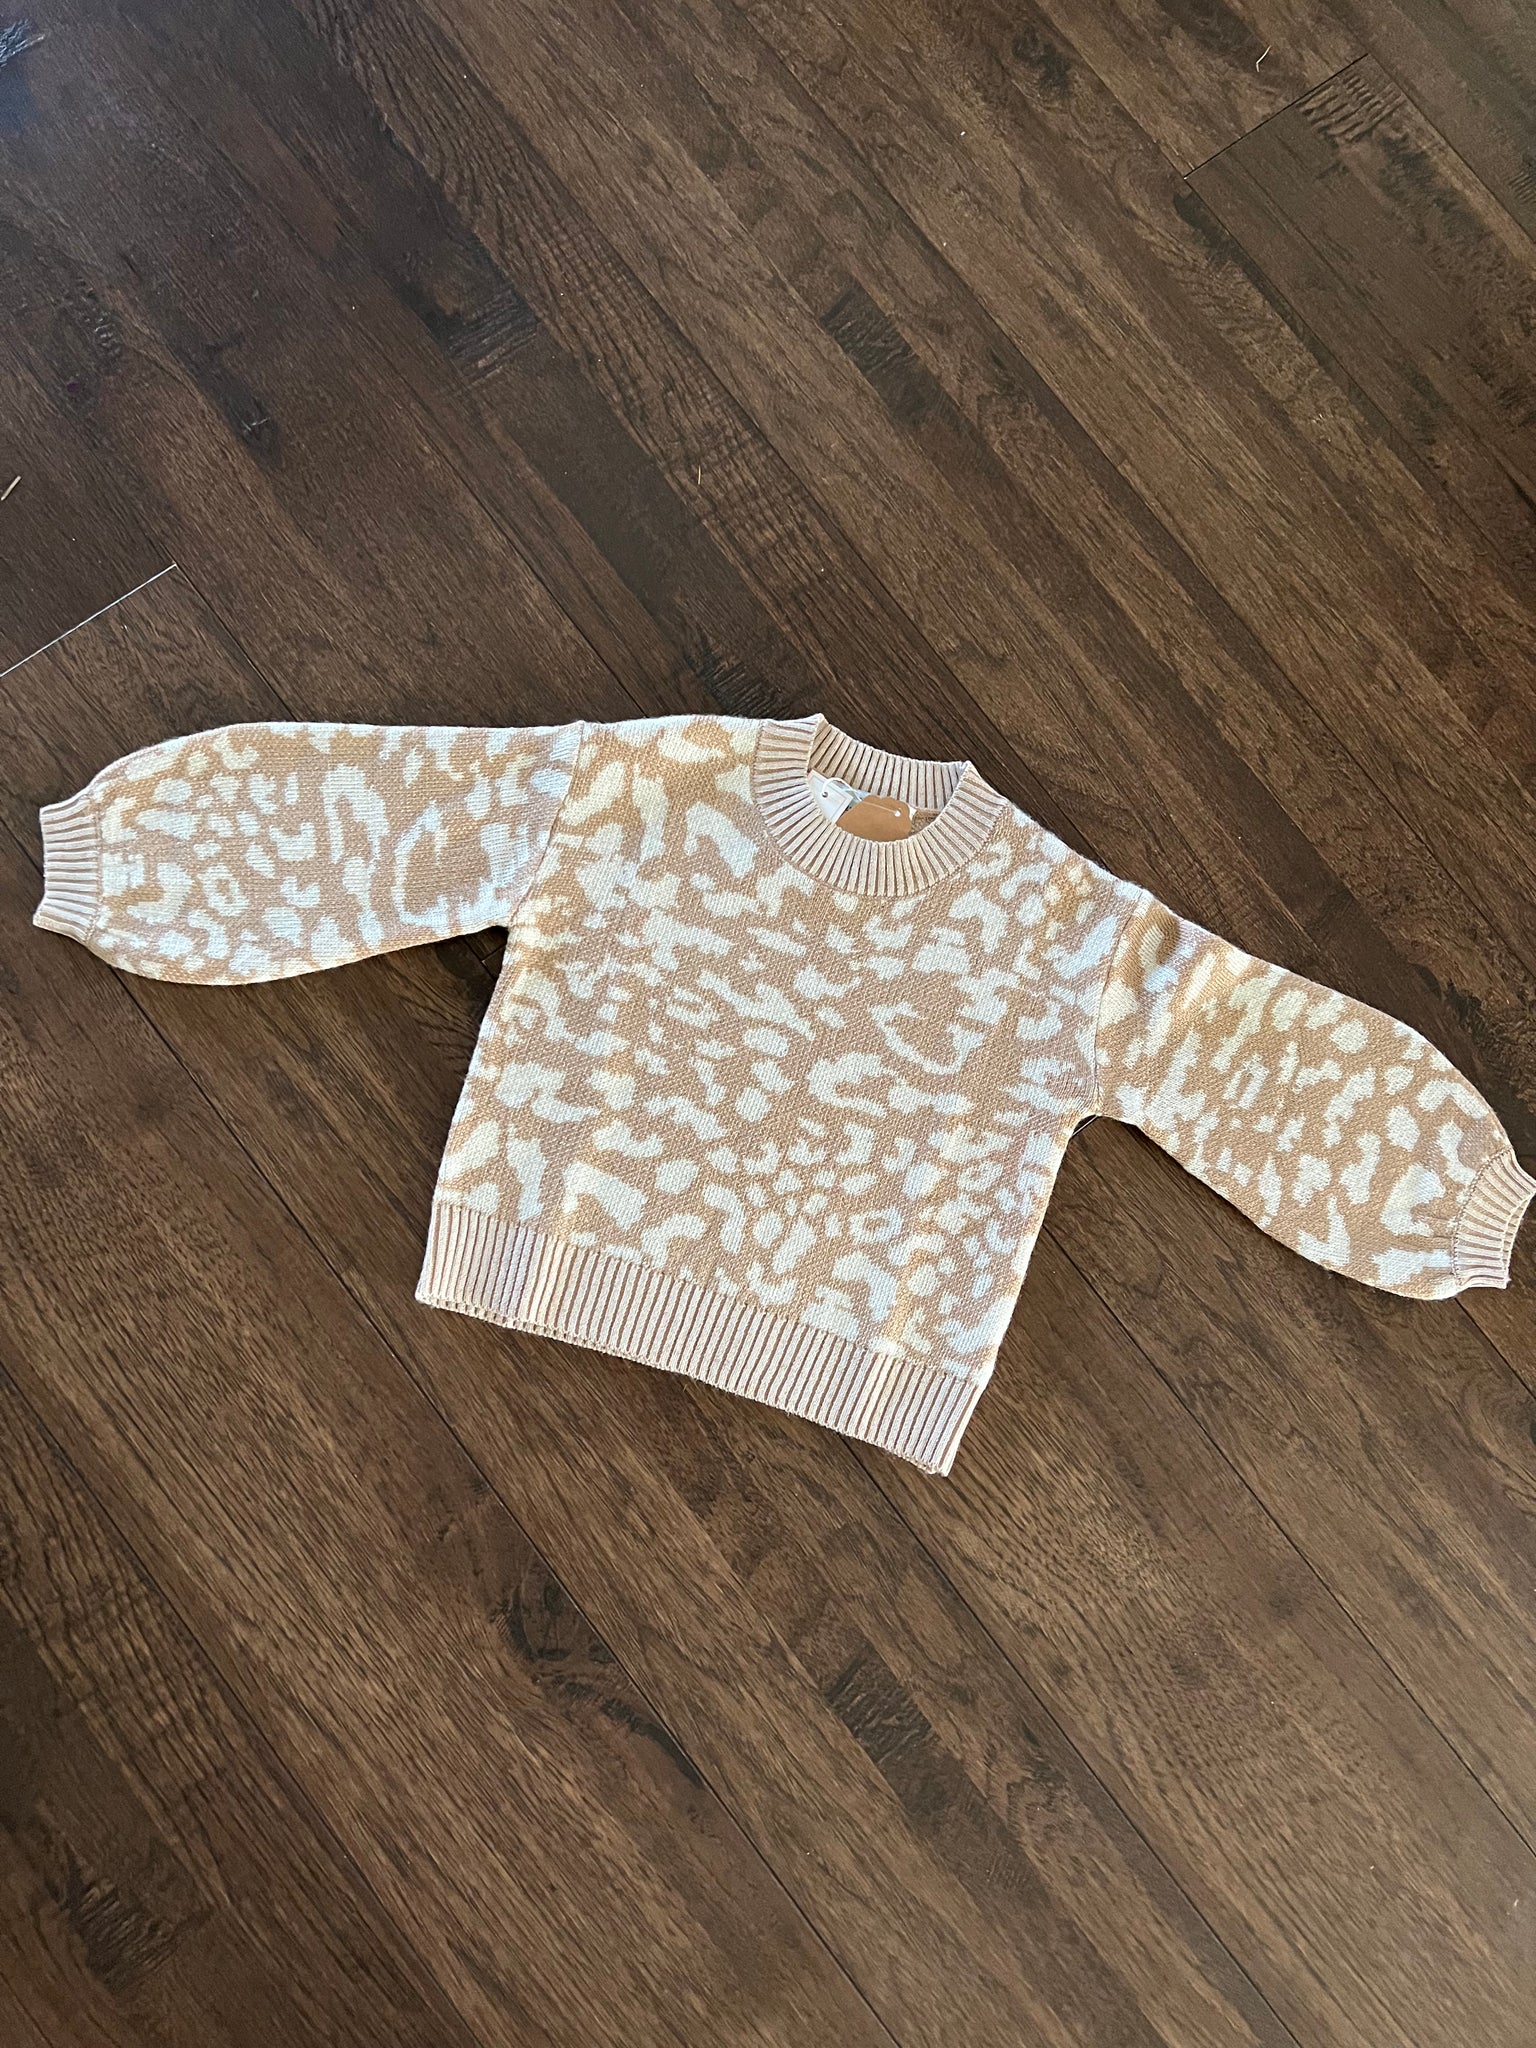 Cheetah Gal Tan Sweater —Little Gals